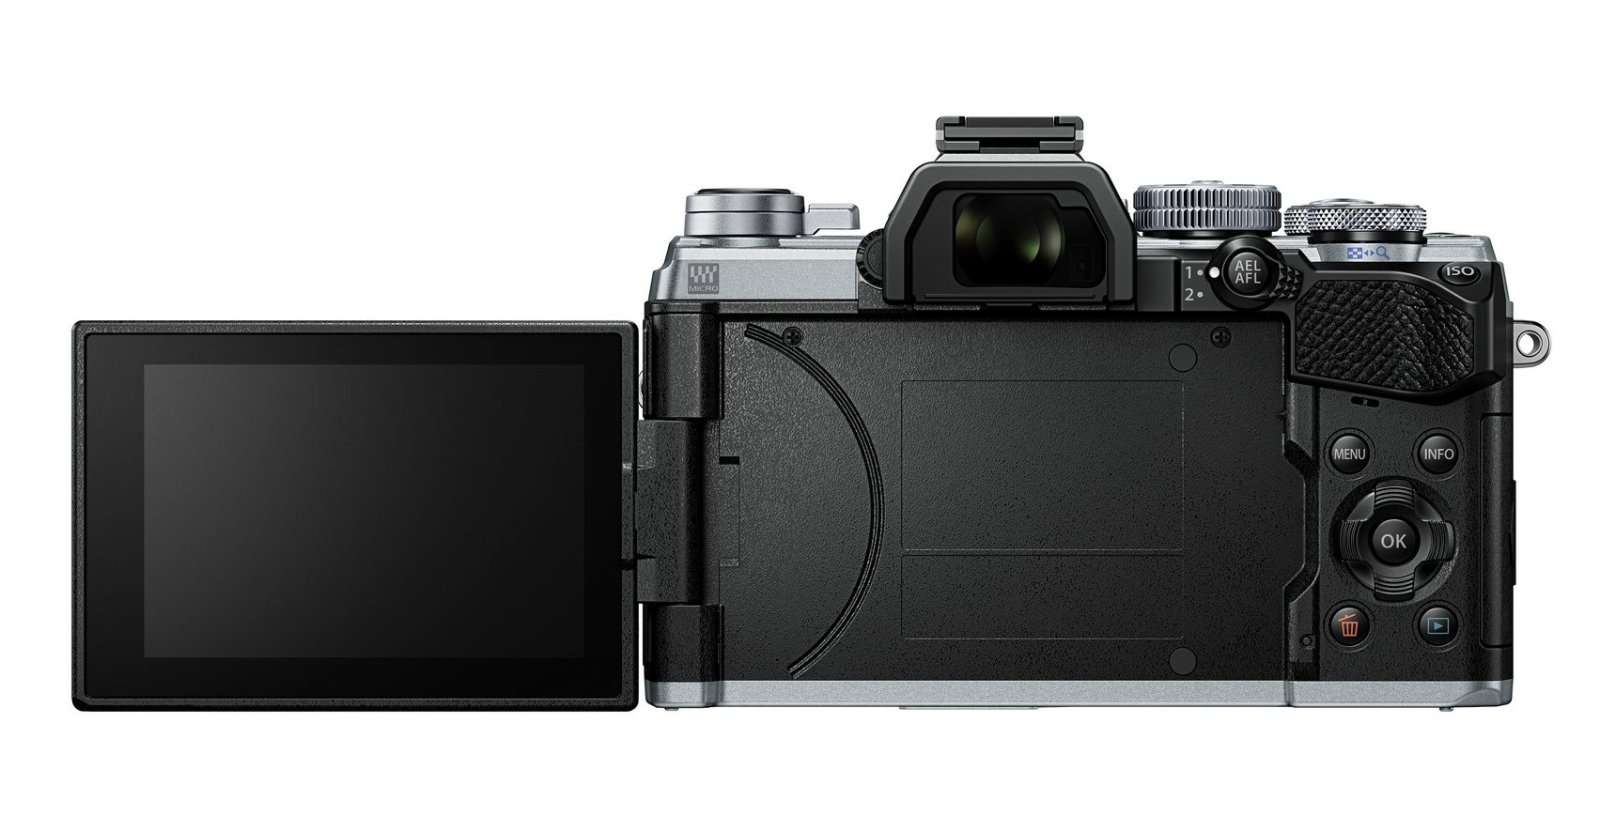 Olympus ra mắt máy ảnh OM-D E-M5 Mark III với thiết kế nhỏ gọn và tốc độ chụp nhanh